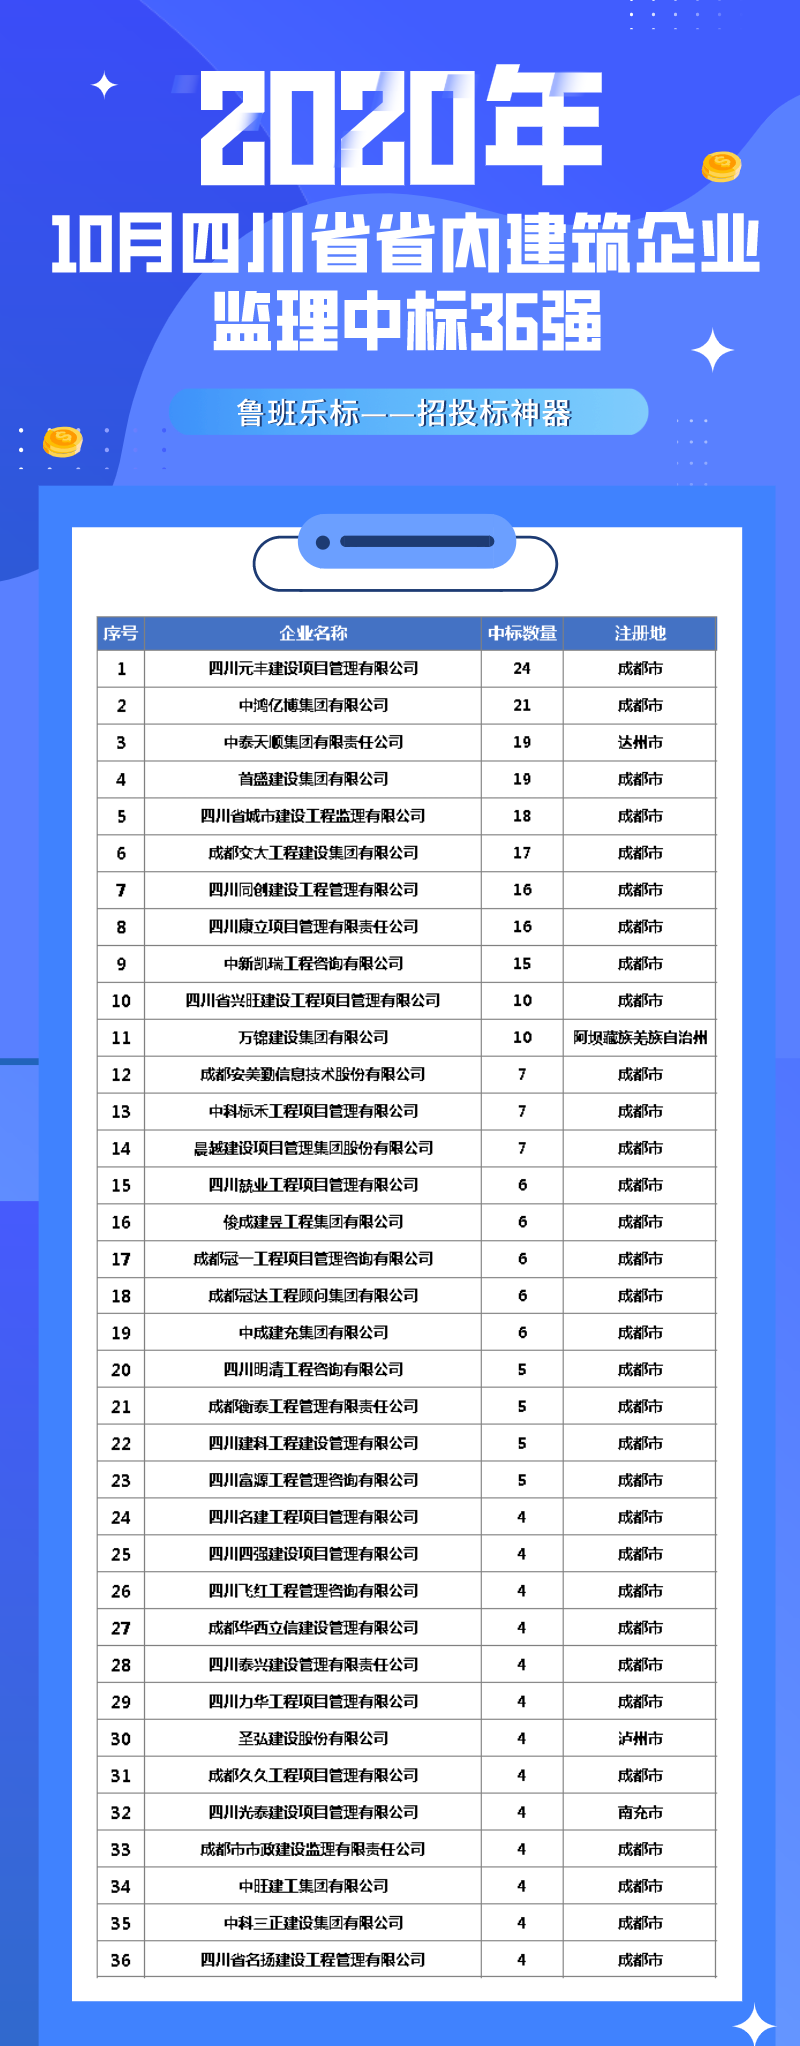 集团于四川省建筑企业10月监理中标排行榜中名列前茅